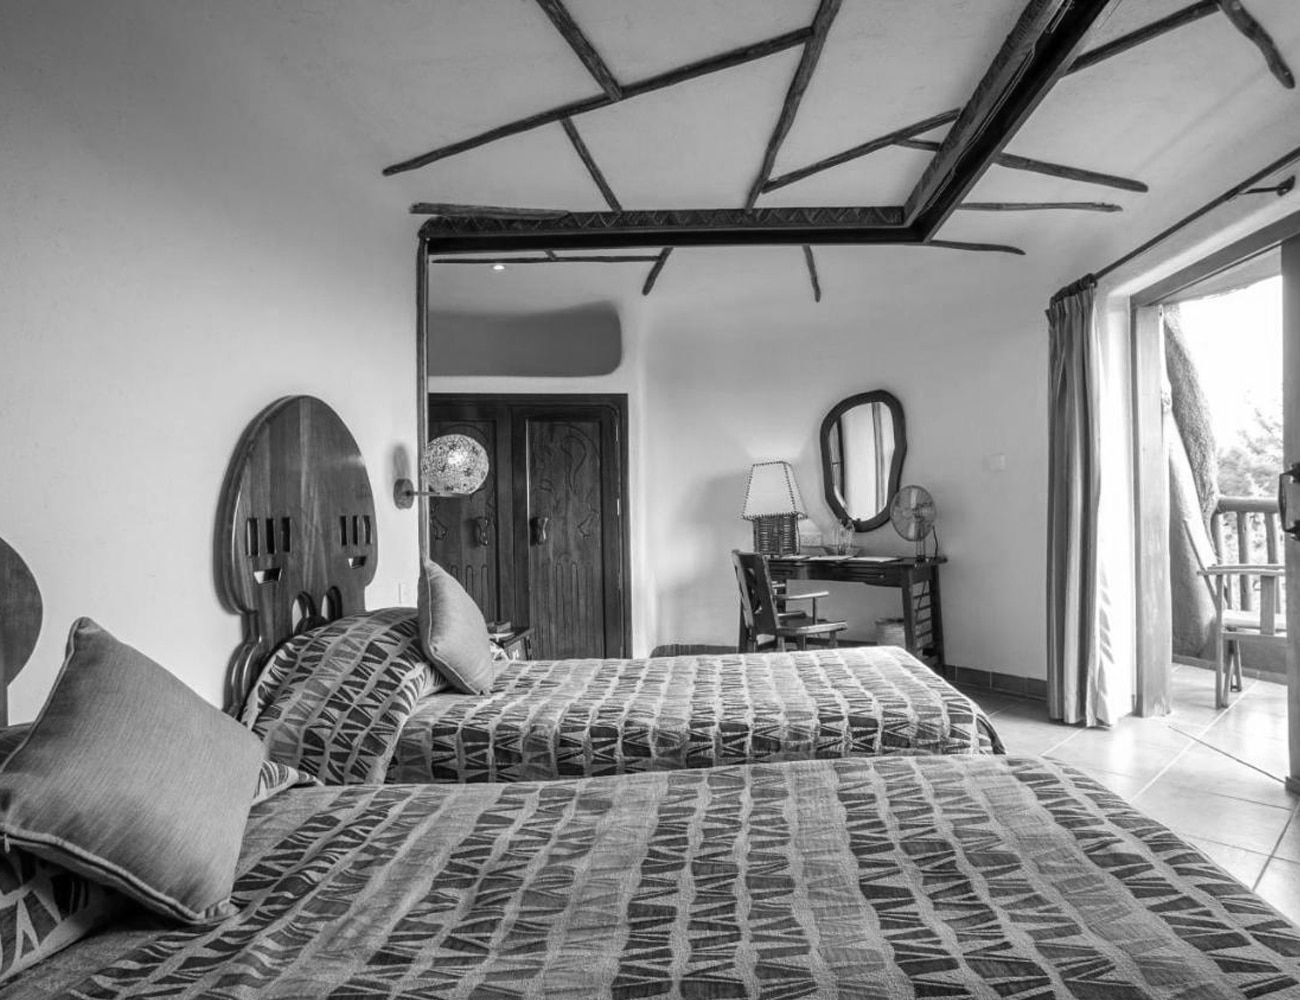 Accommodations at Serengeti Serena Lodge